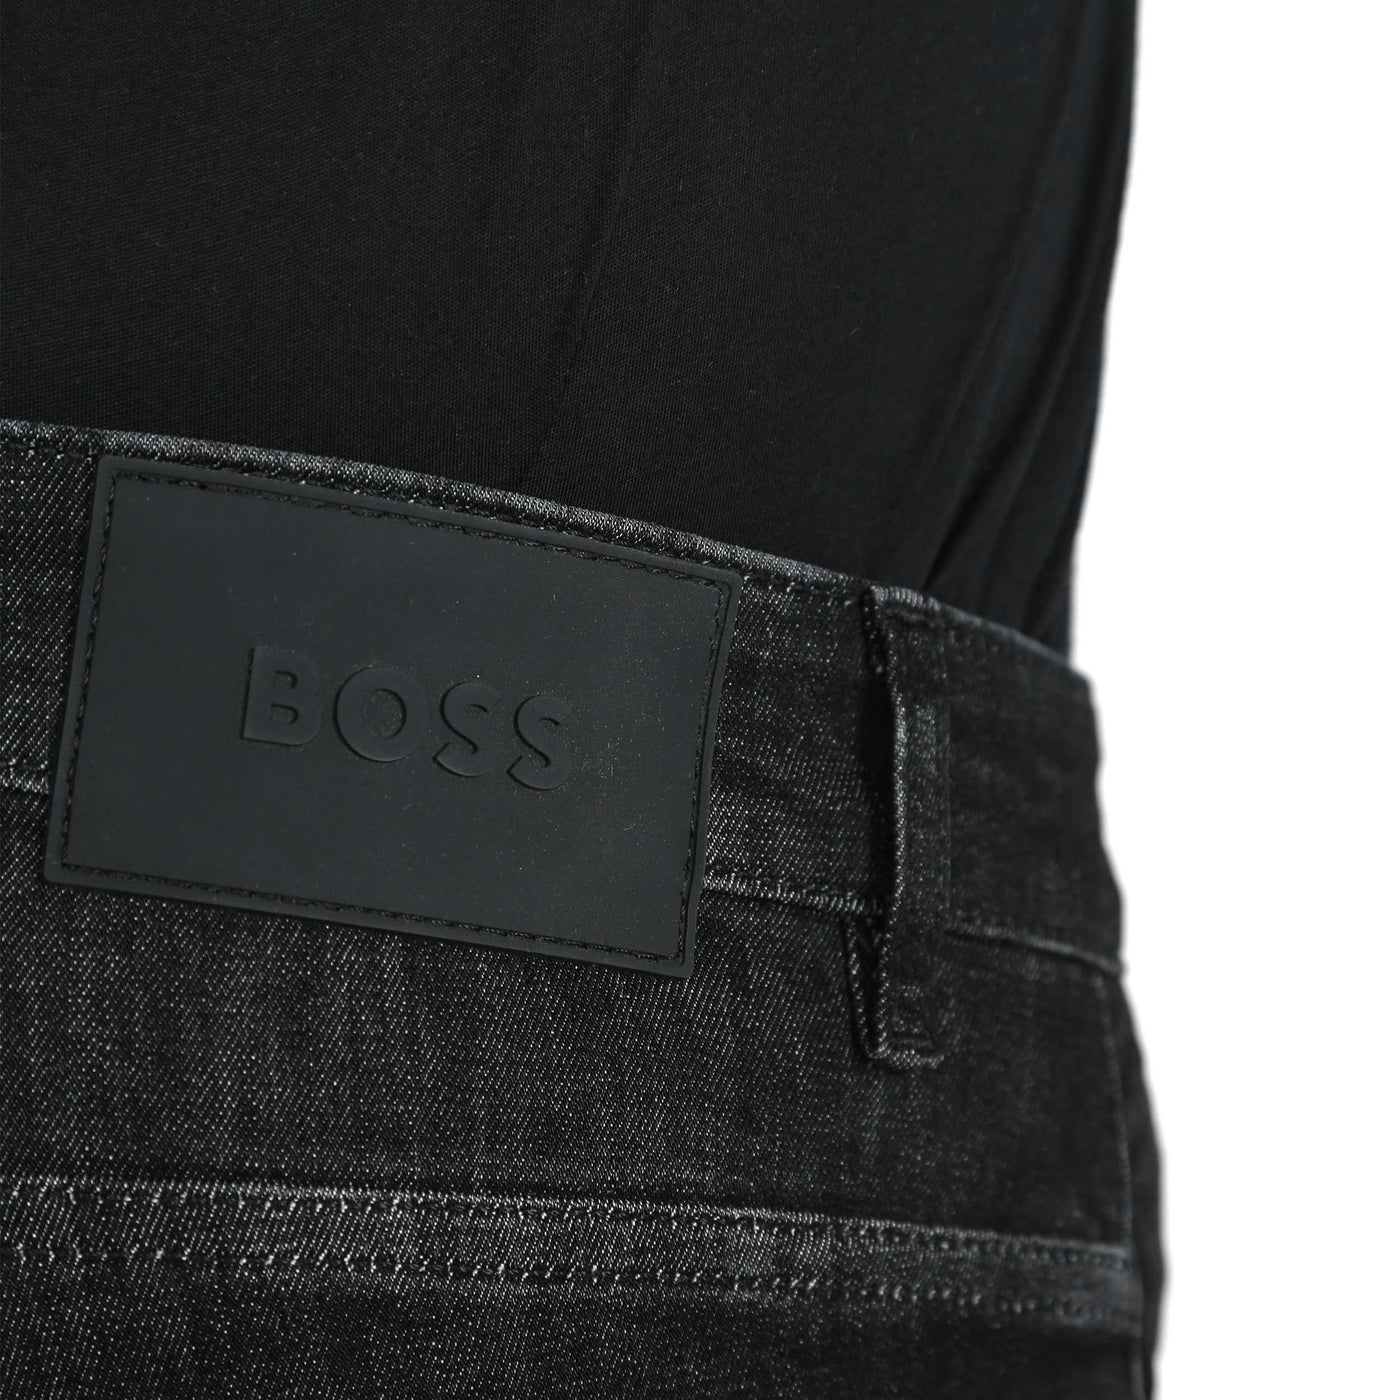 BOSS Black Delaware 3 1 200 Jean in Charcoal